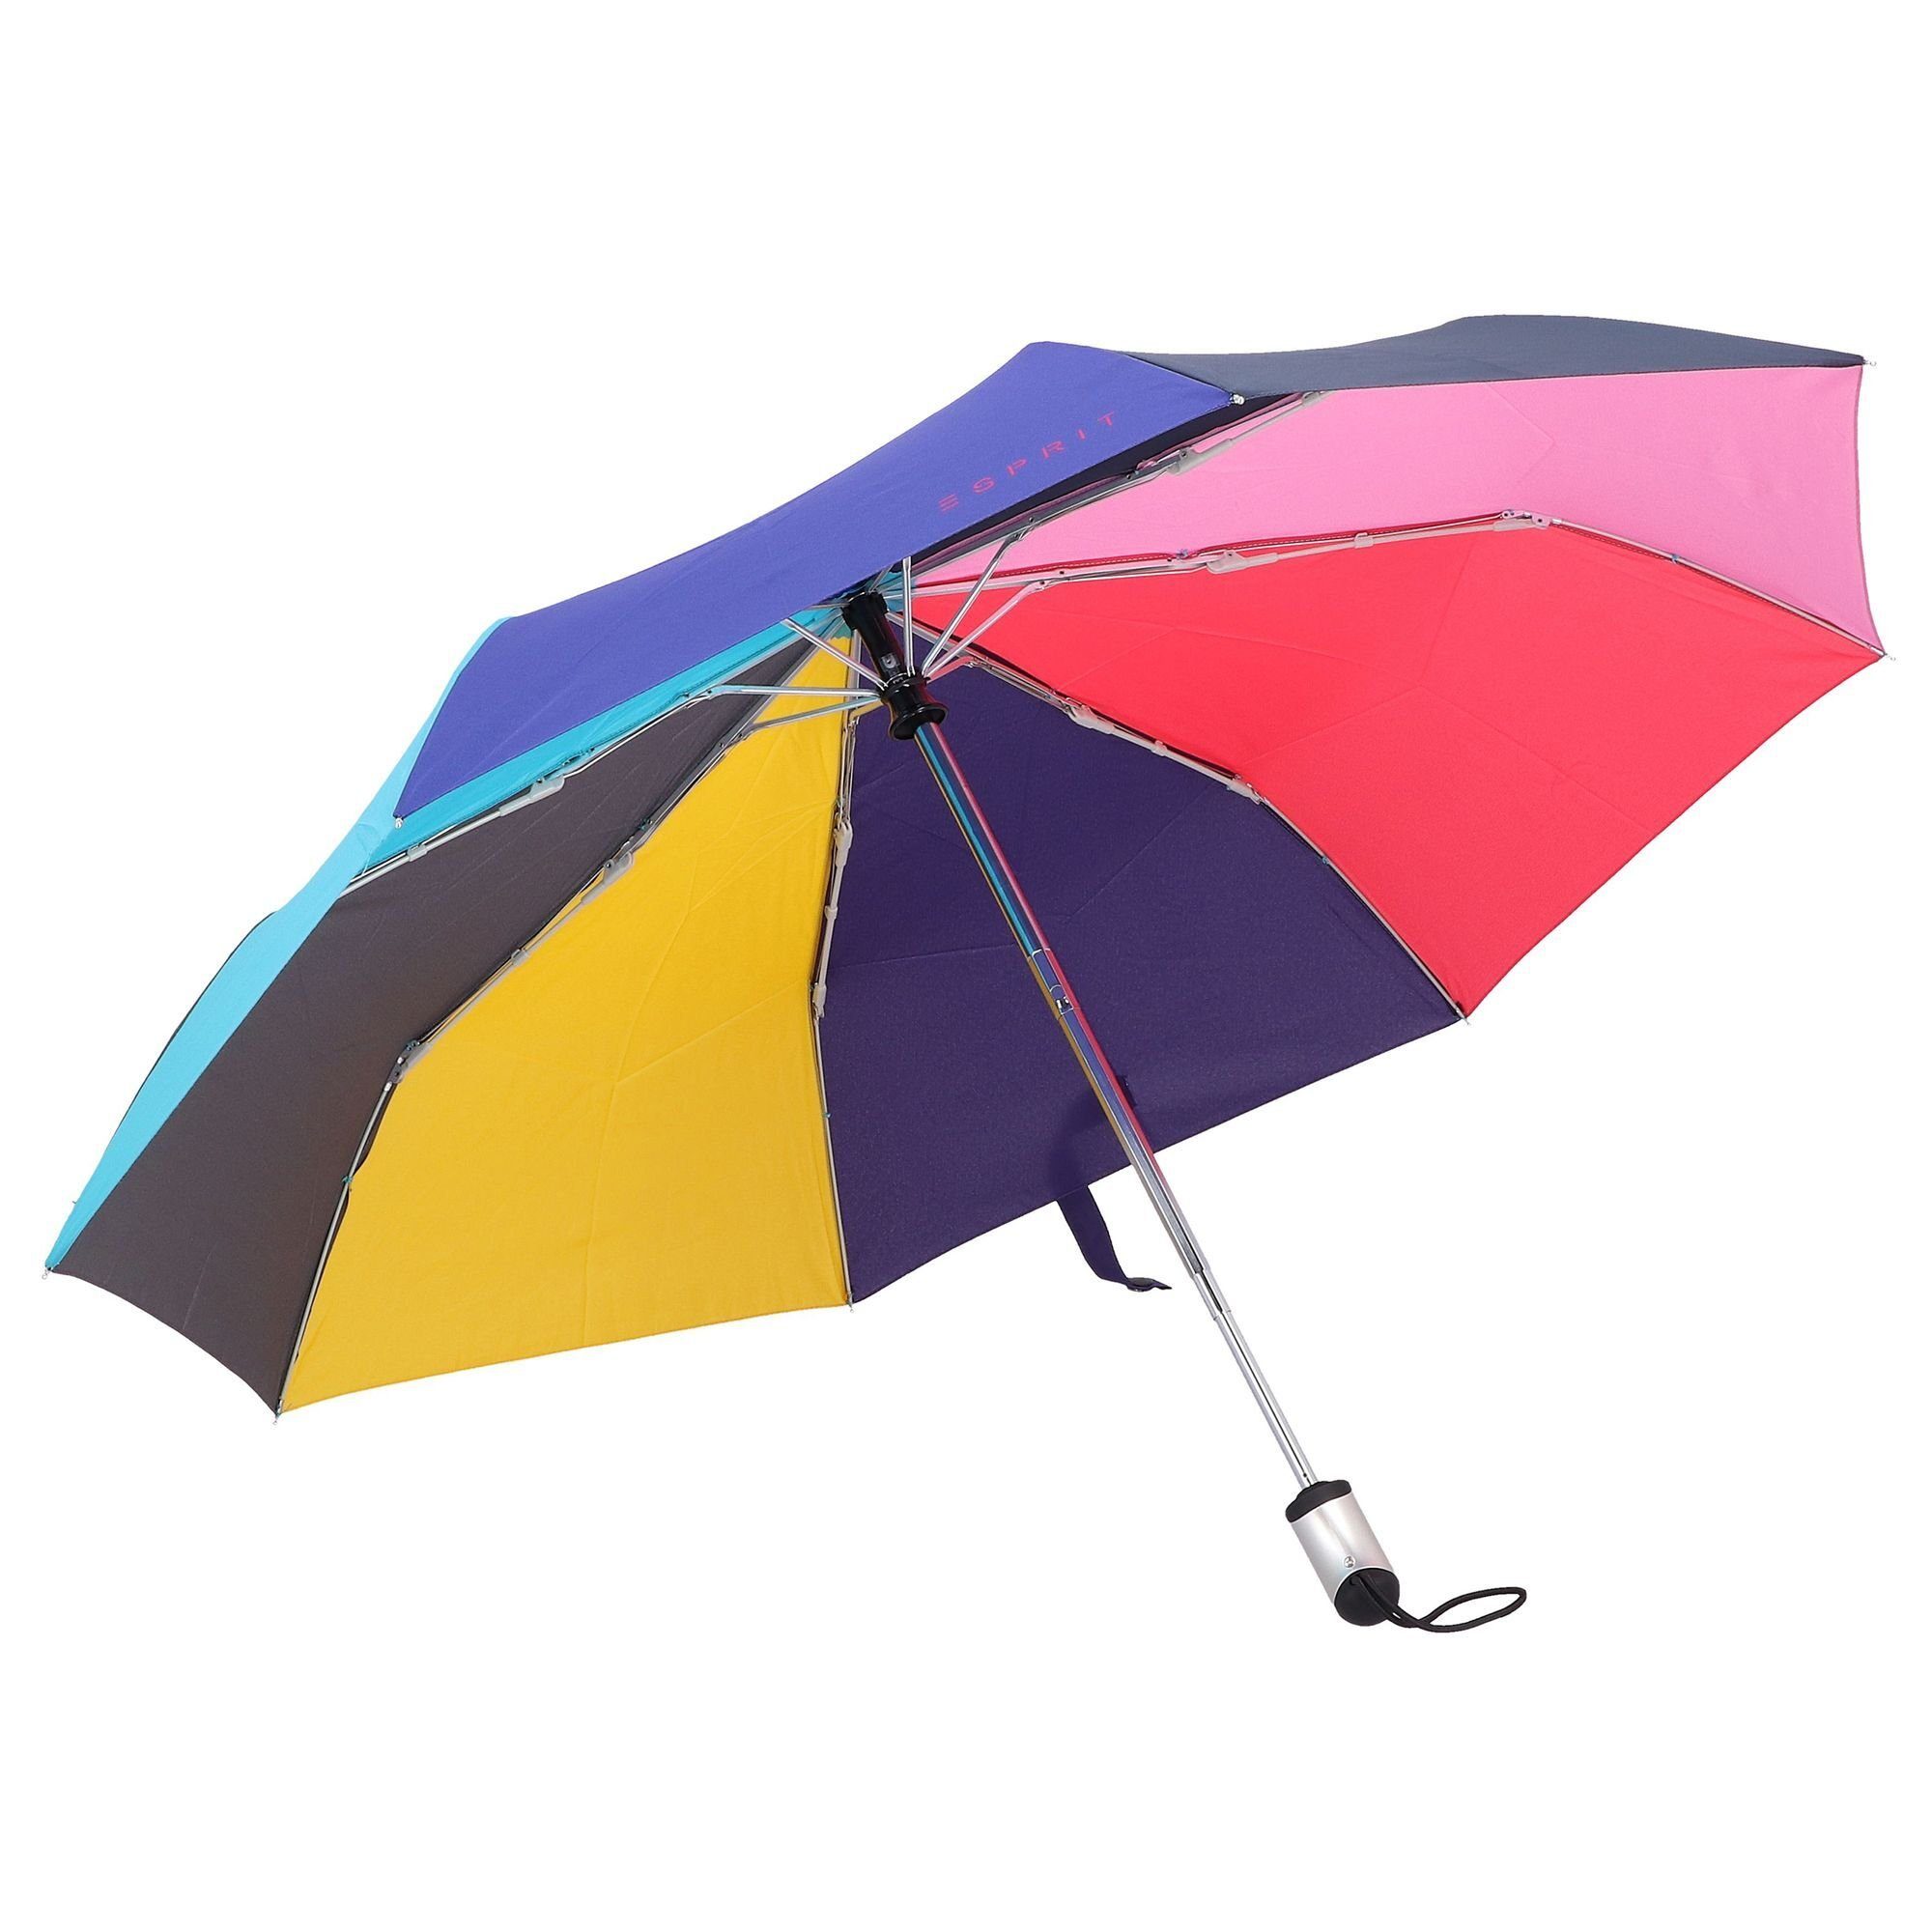 Taschenregenschirm Esprit